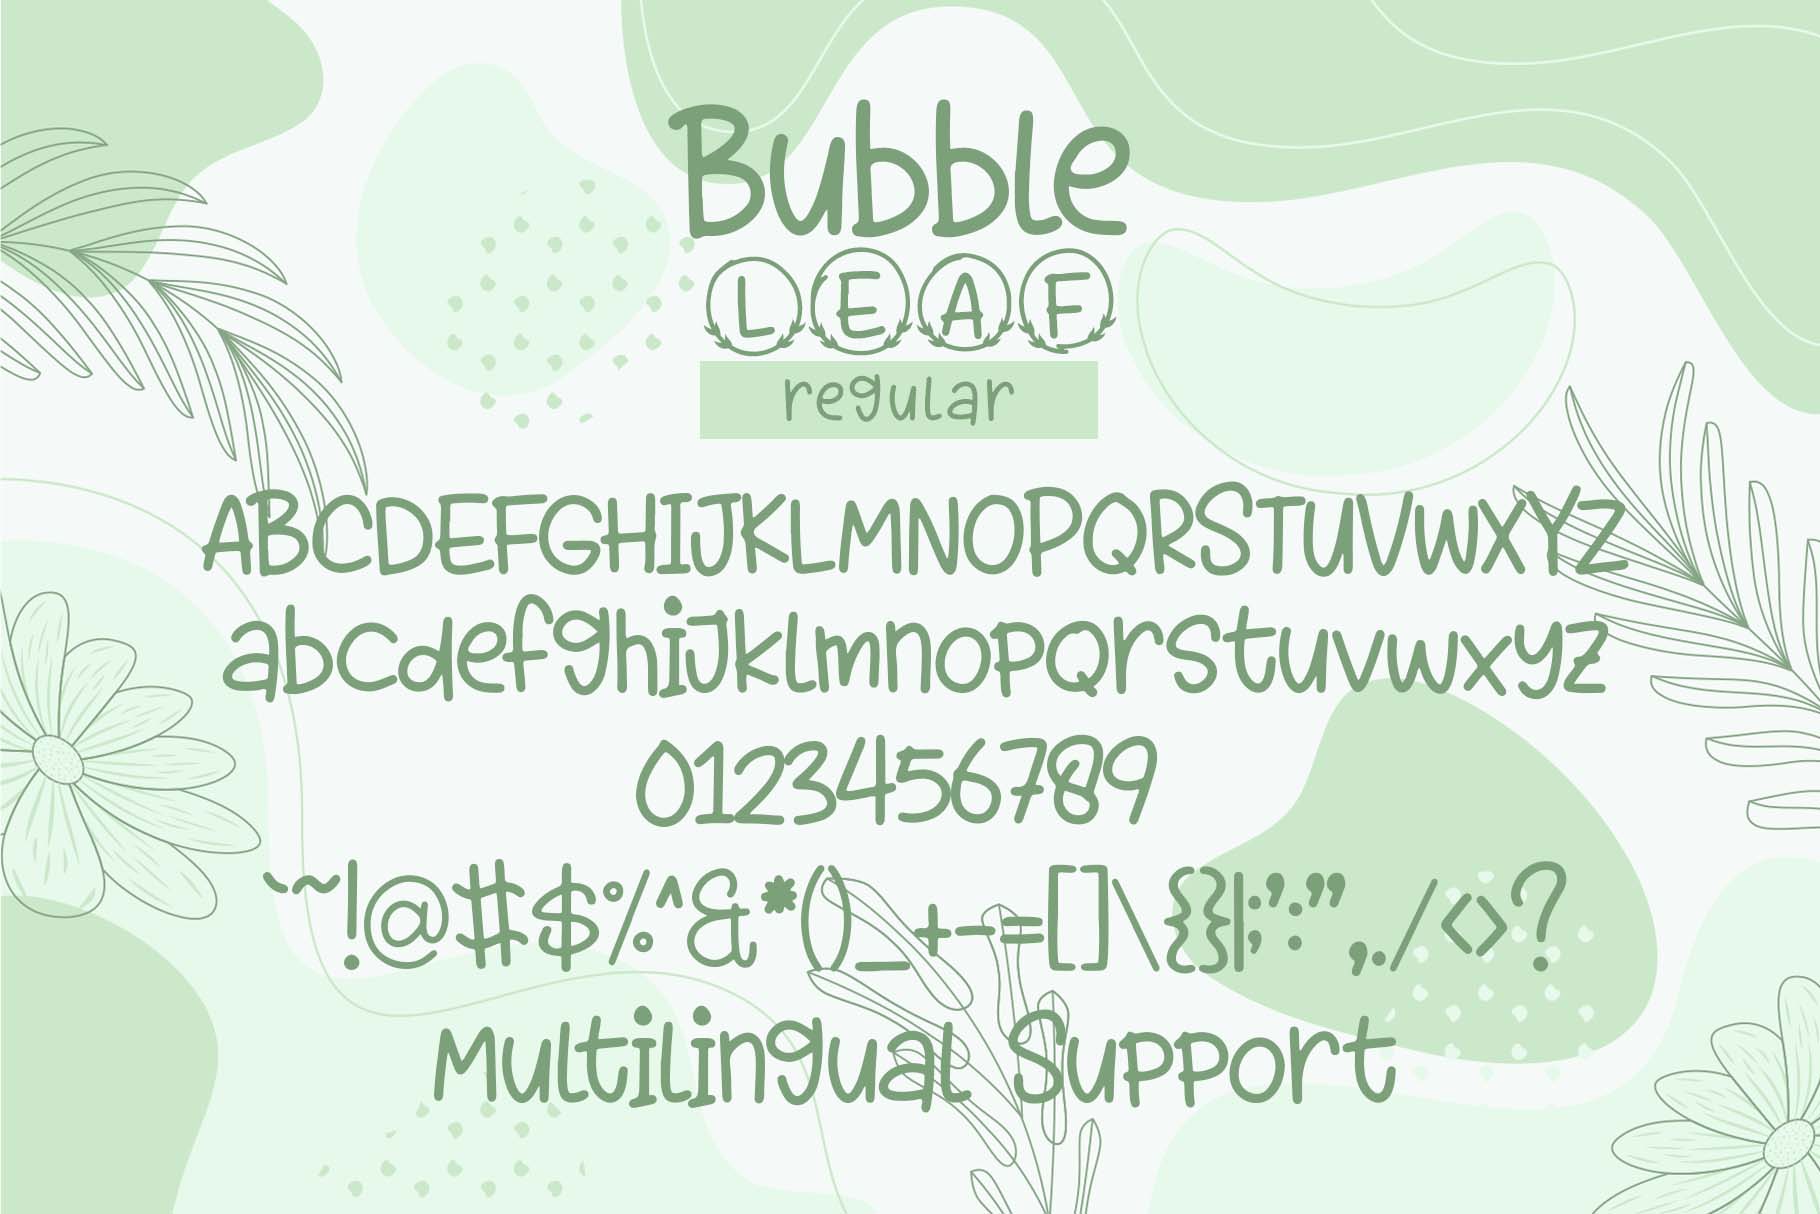 Bubble Leaf Monogram